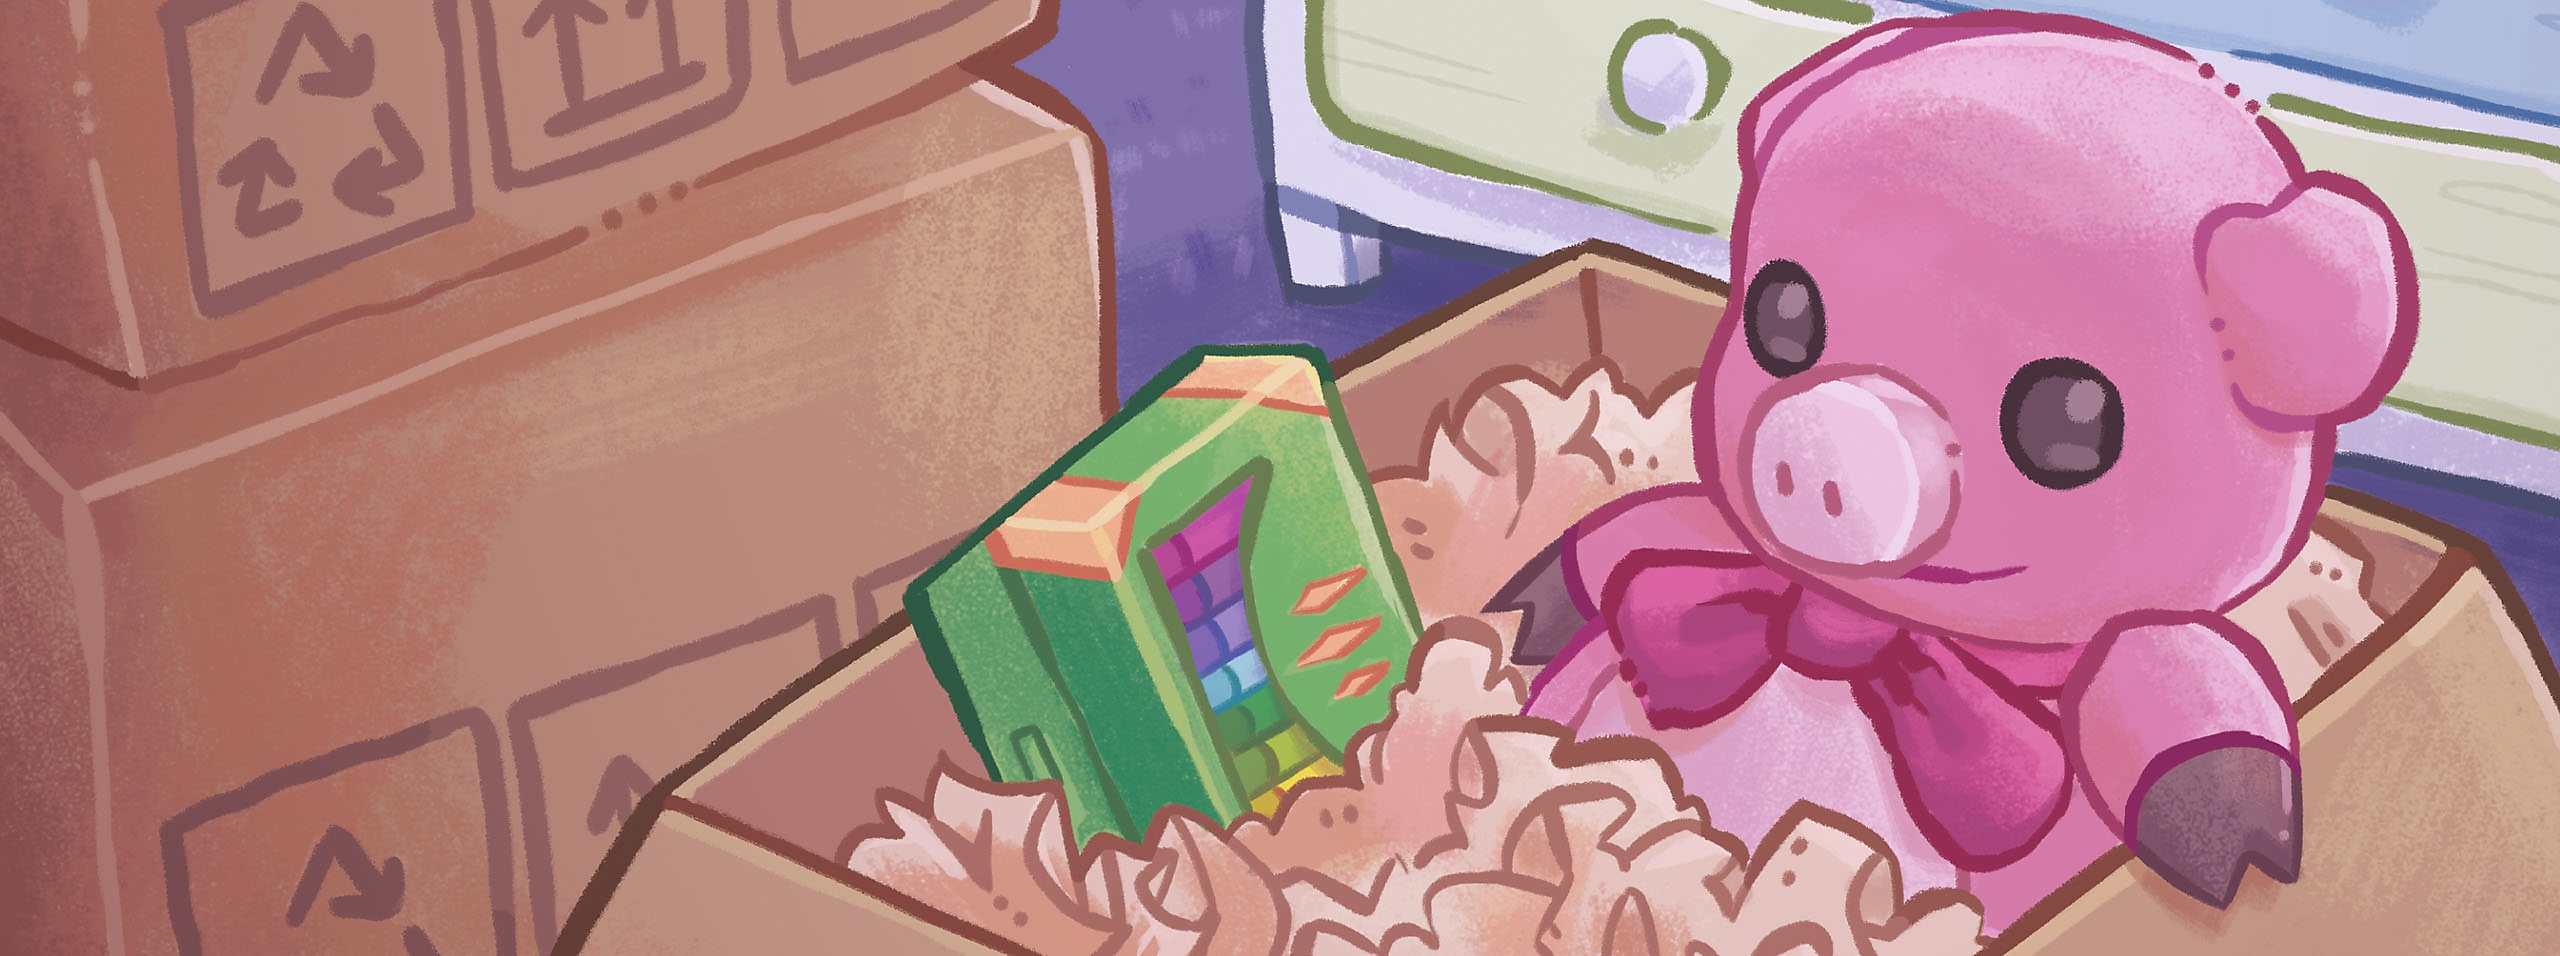 Unpacking-heltegrafik med en papkasse med lyserødt griselegetøj i